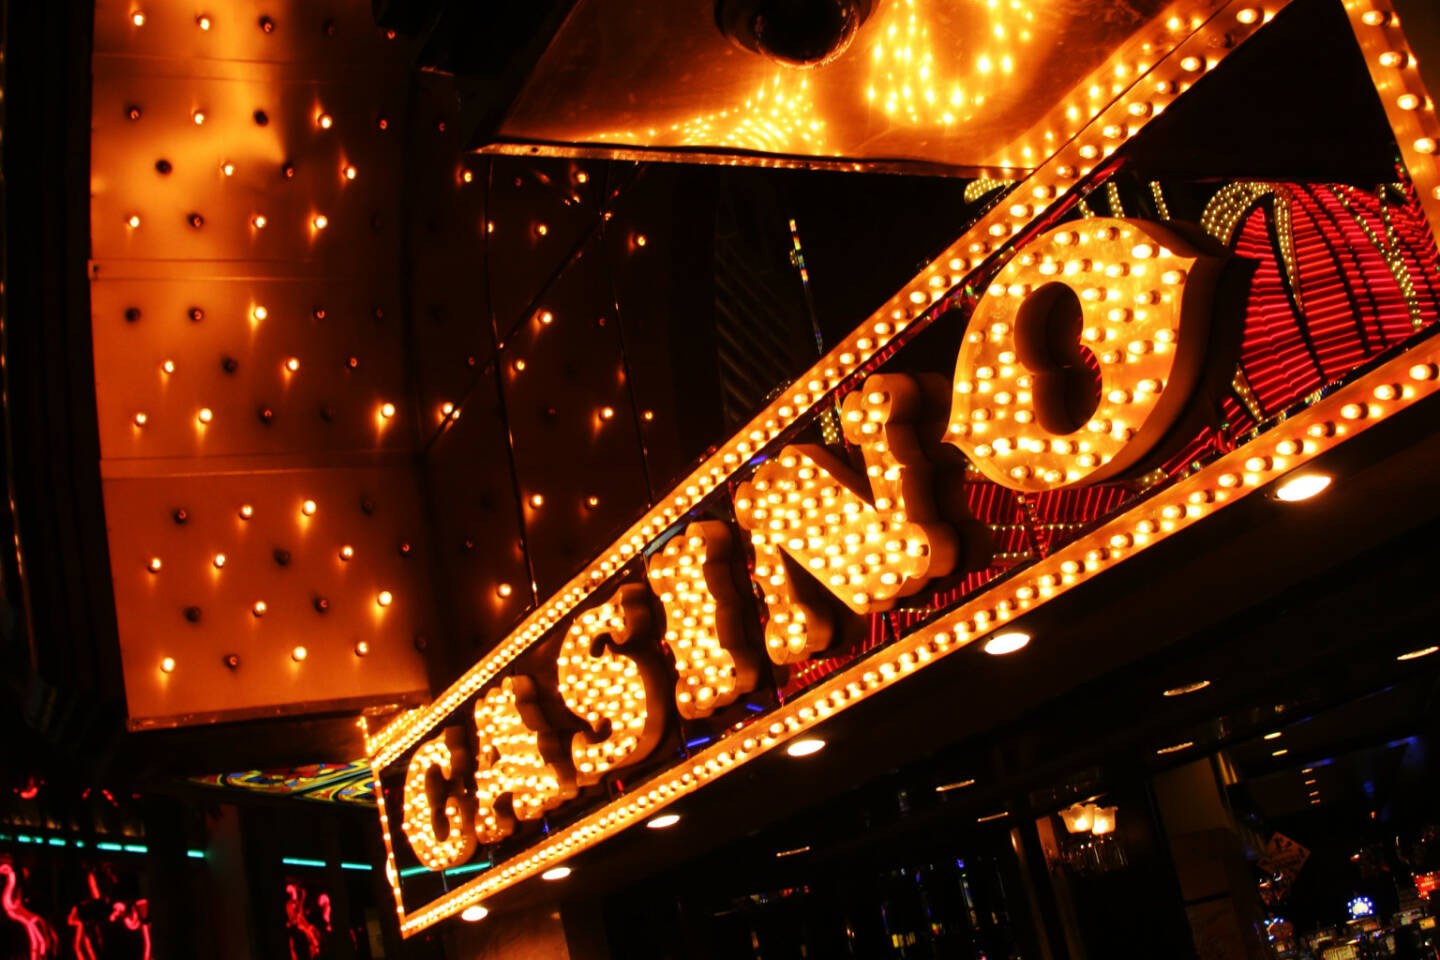 Neon casino sign. Las Vegas, Nevada, USA - https://de.depositphotos.com/32910957/stock-photo-neon-casino-sign.html 